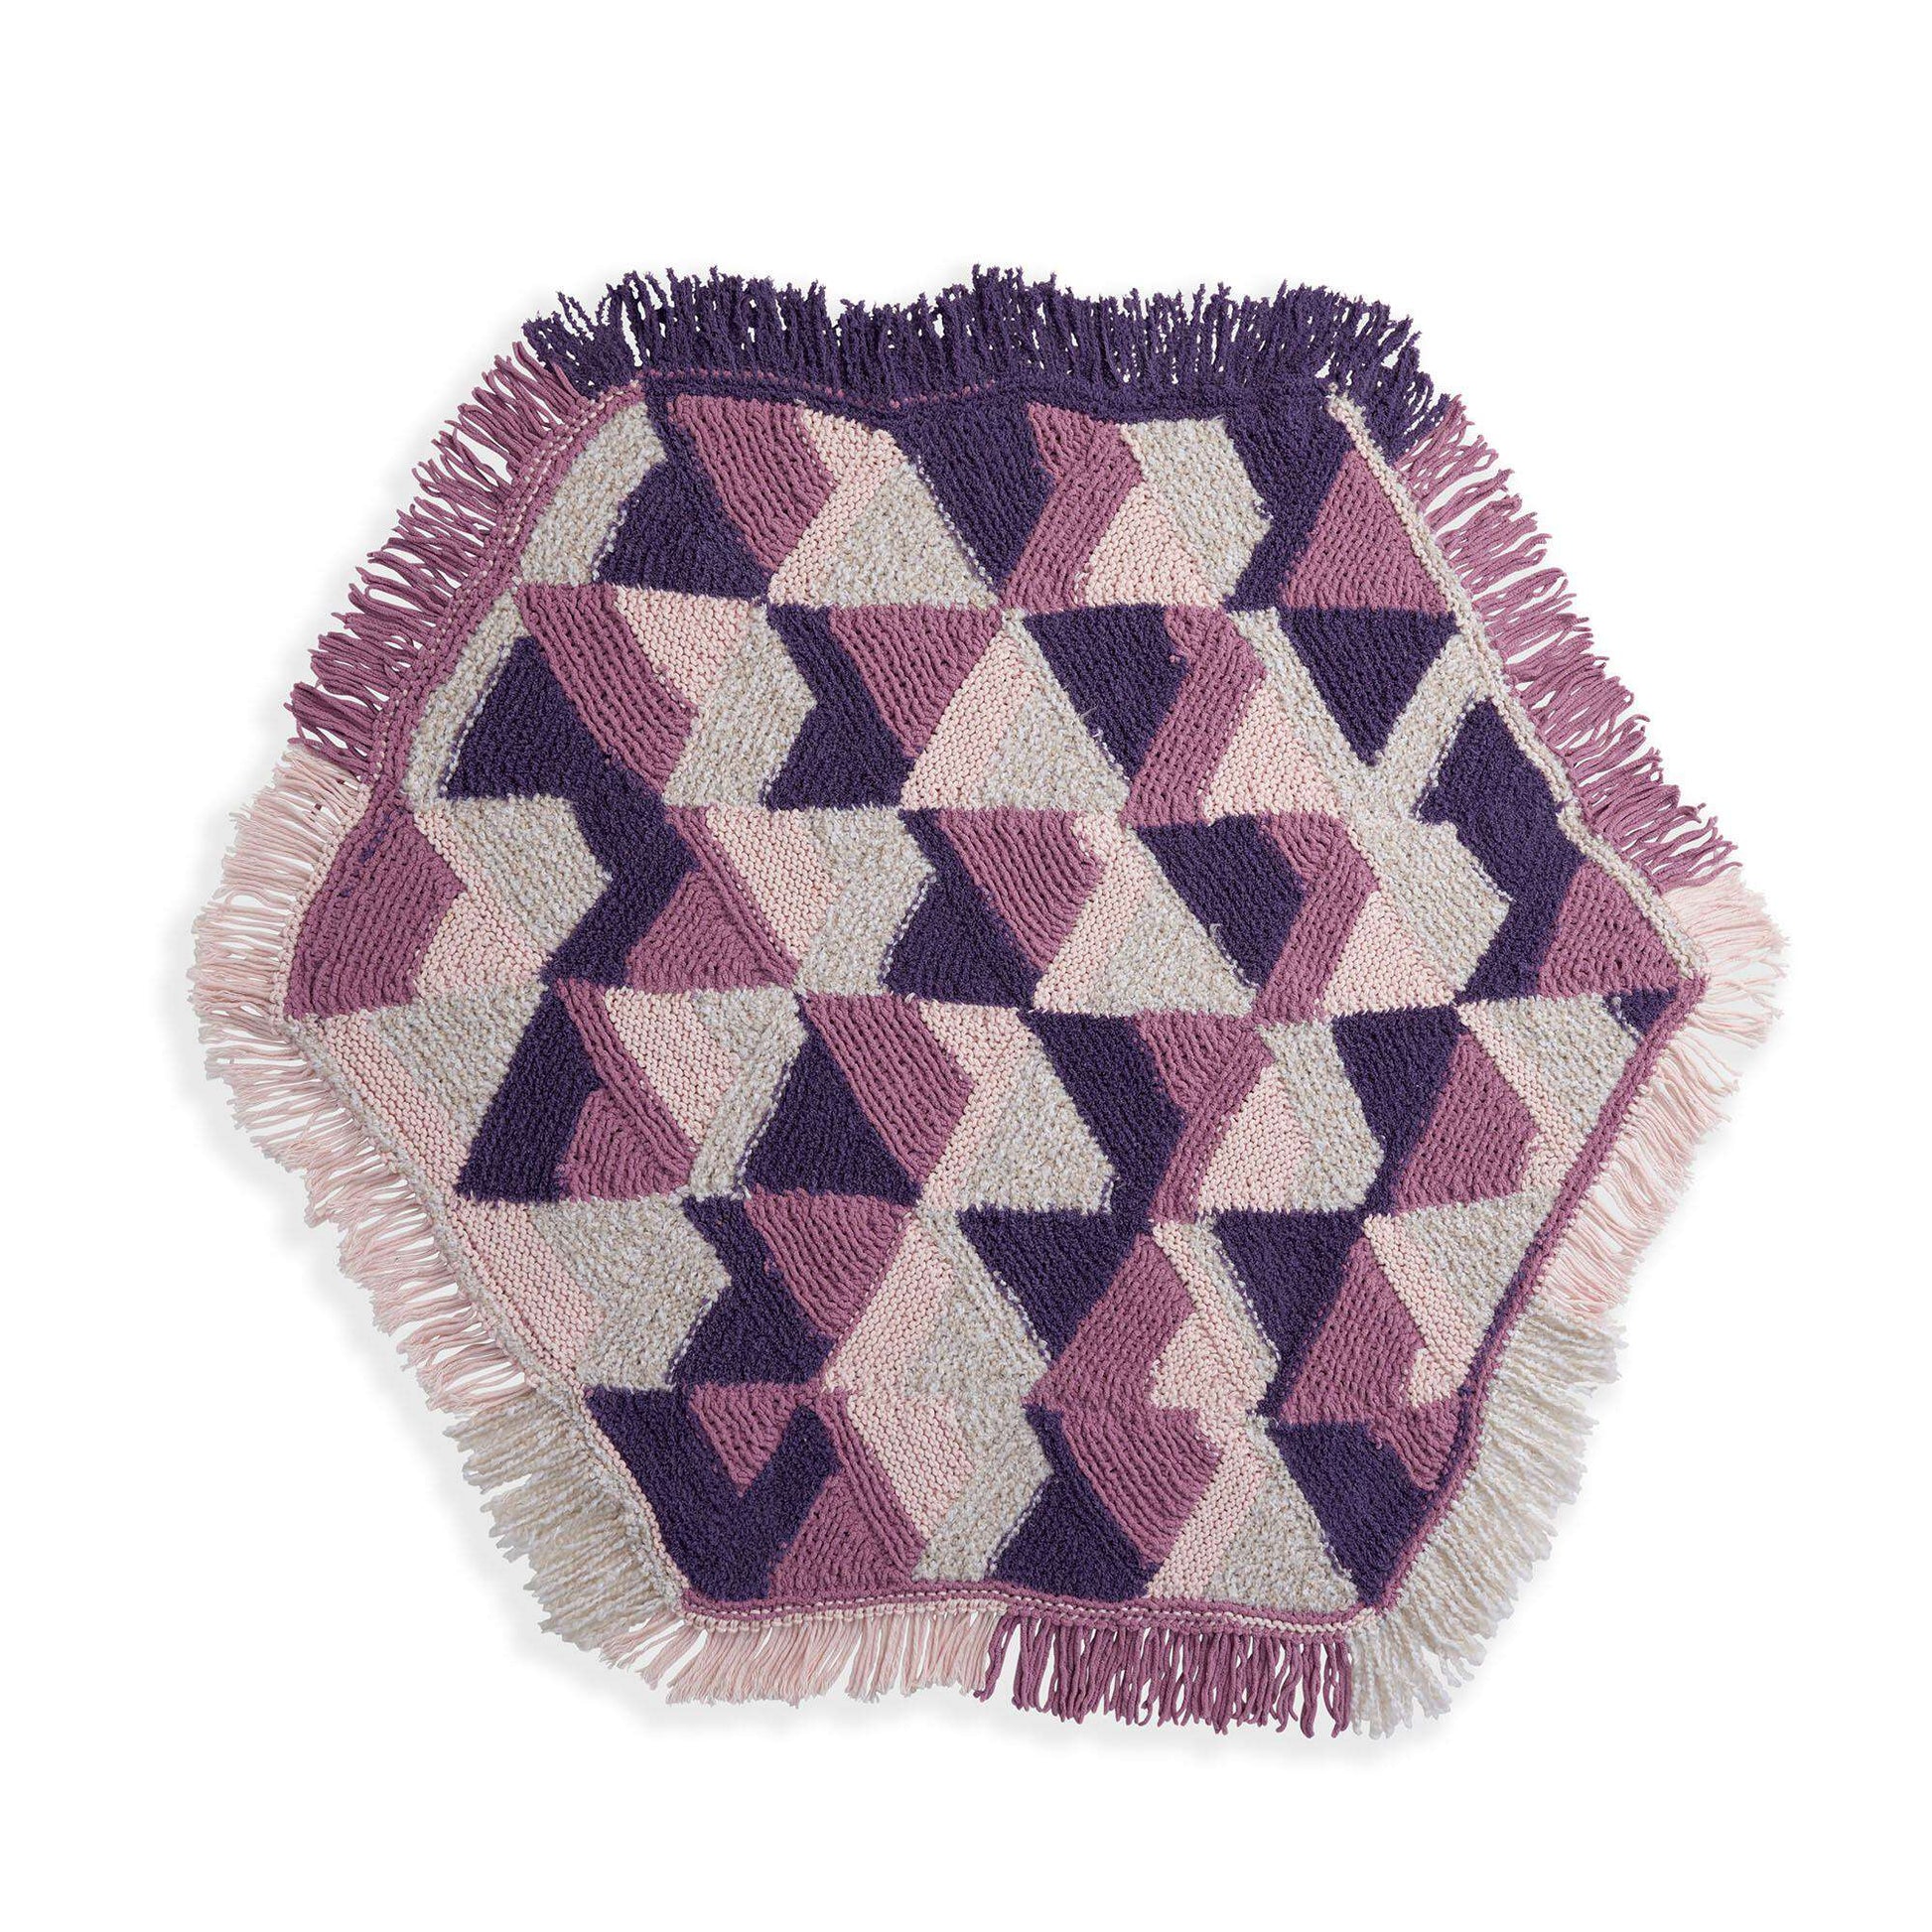 Free Bernat Watercolor Knit Blanket Pattern